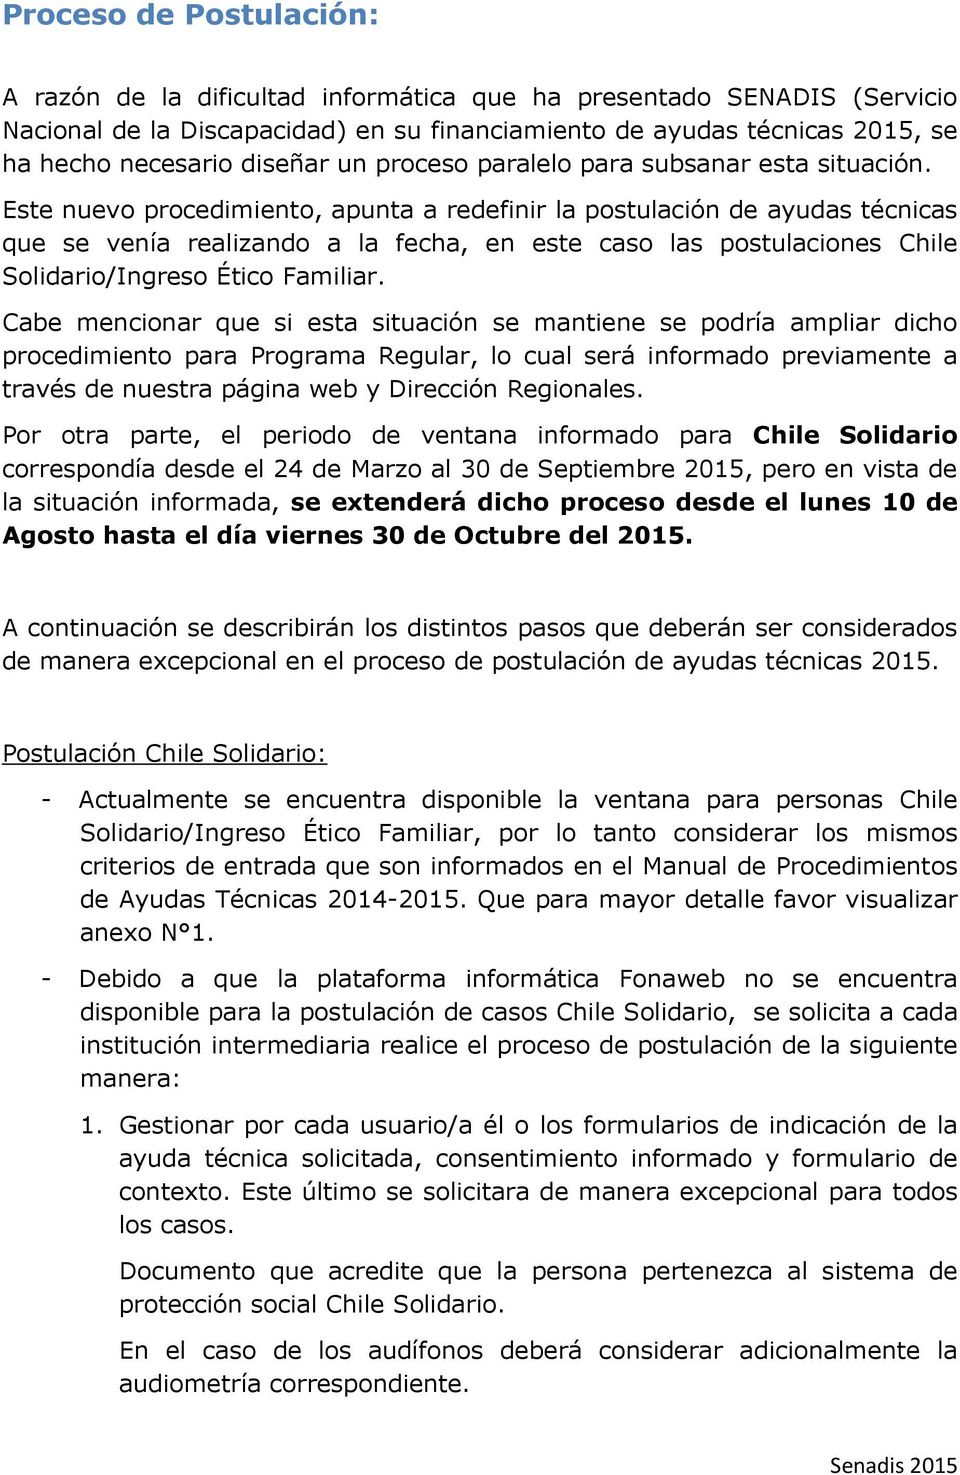 Este nuevo procedimiento, apunta a redefinir la postulación de ayudas técnicas que se venía realizando a la fecha, en este caso las postulaciones Chile Solidario/Ingreso Ético Familiar.